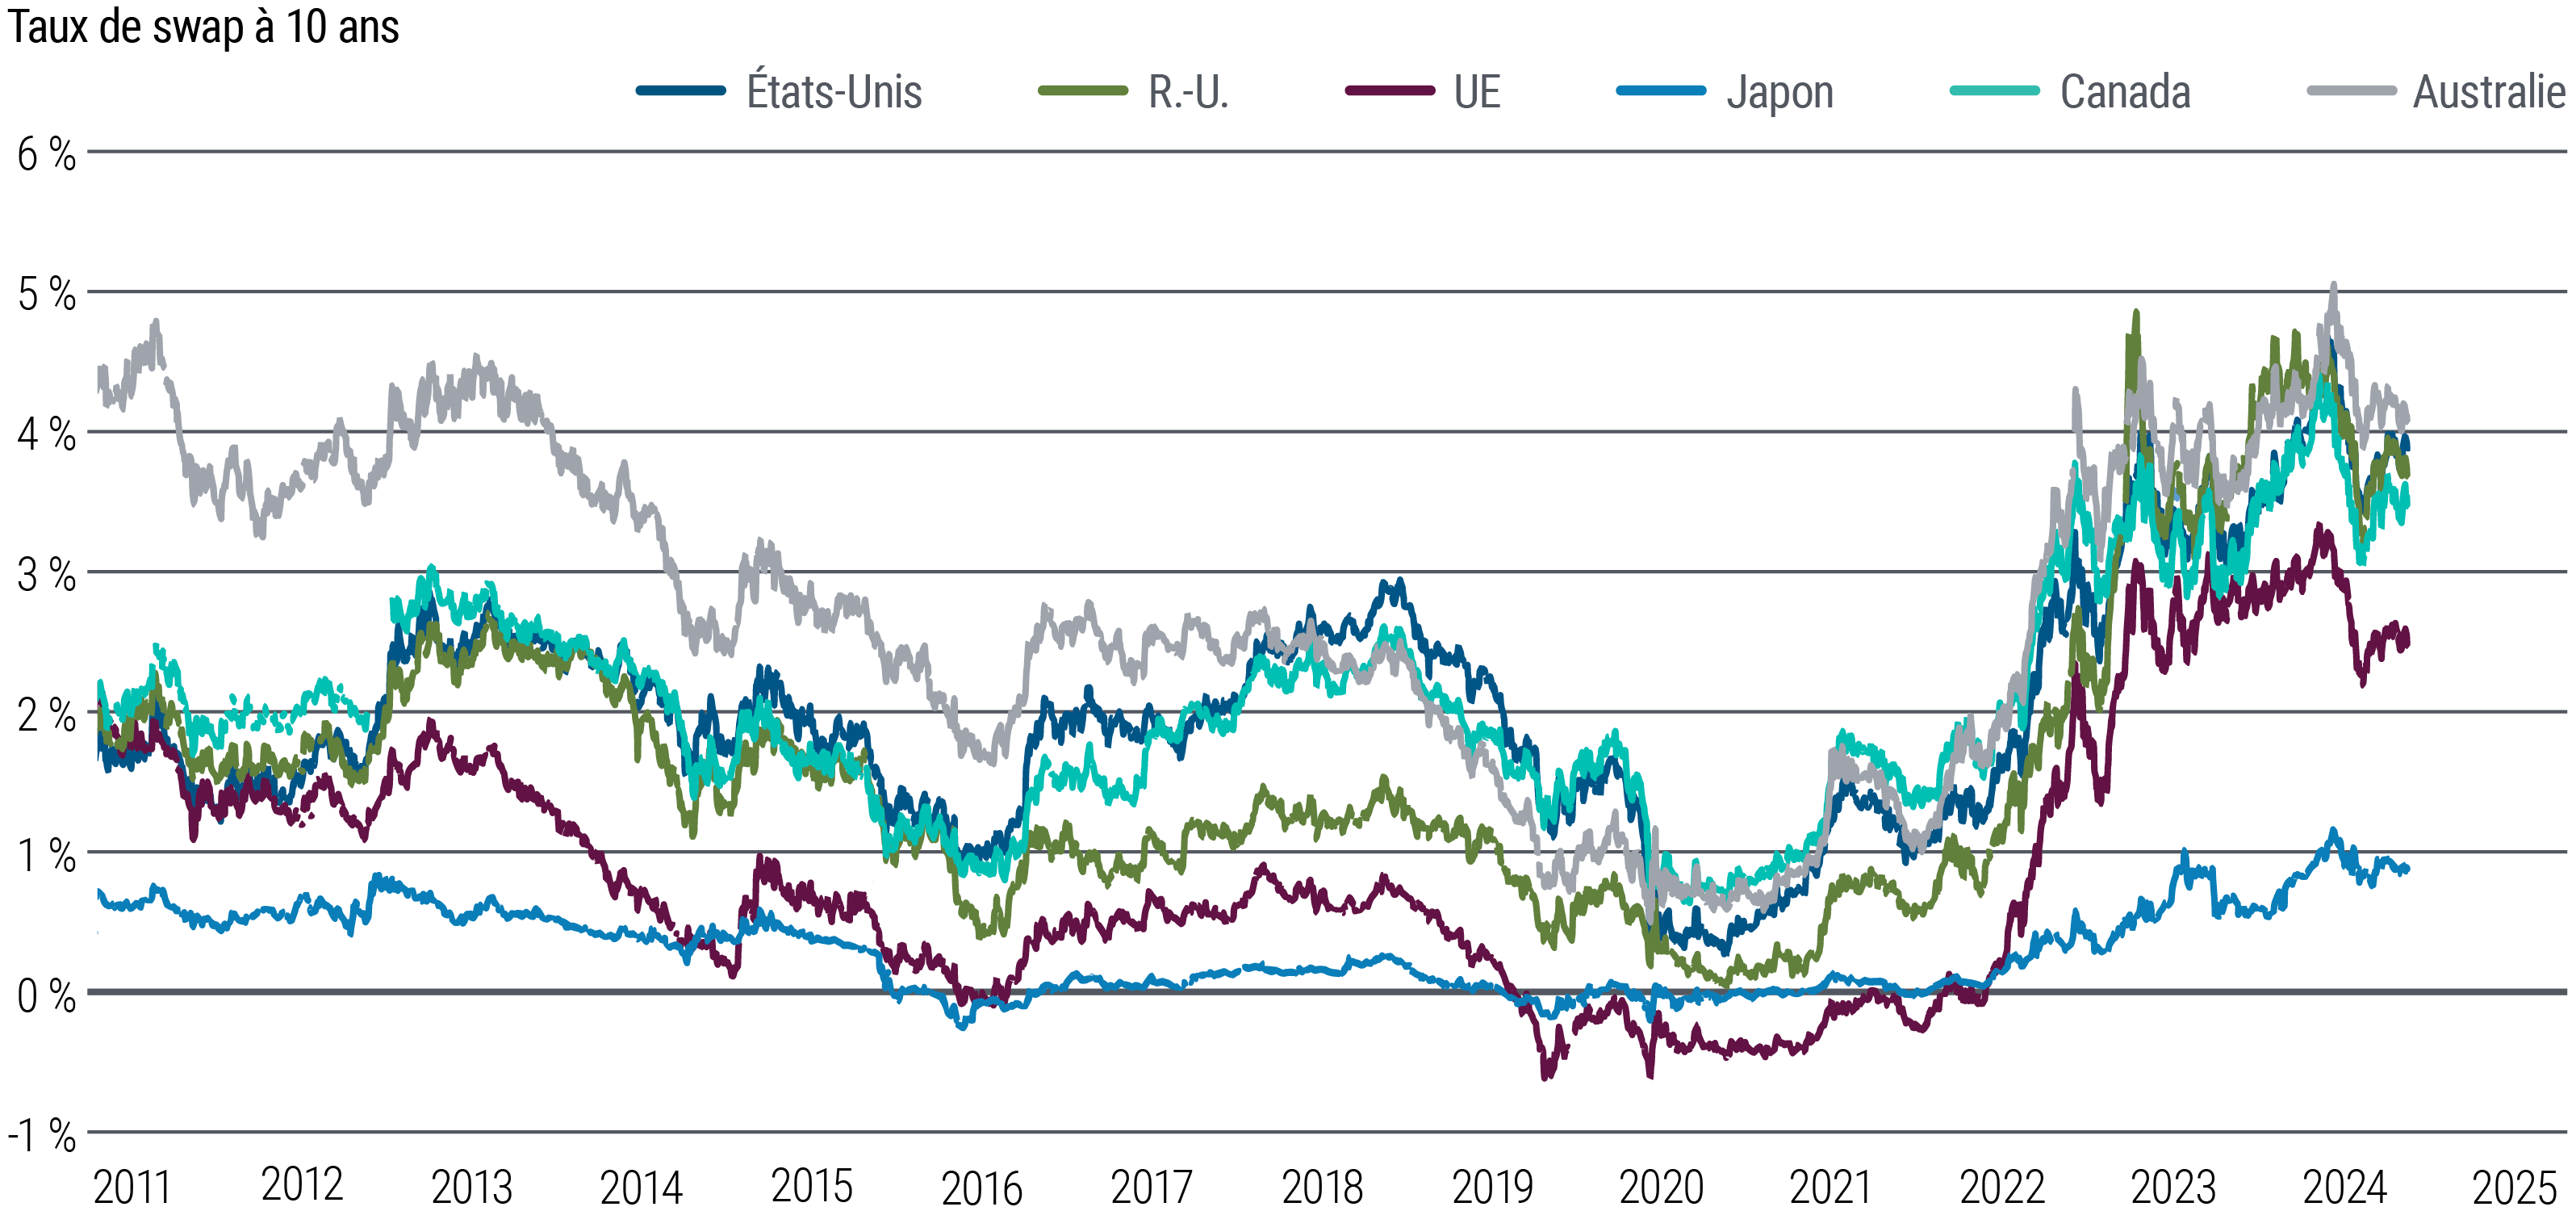 La figure 6 est un graphique linéaire comparant les taux de swaps des obligations souveraines à 10 ans aux États-Unis, dans la zone euro, au Royaume-Uni, au Japon, en Australie et au Canada de 2011 à mars 2024. Ces taux ont plongé en dessous de 1 % (voire en dessous de 0 % au Japon) au début de la pandémie en 2020, et ont ensuite augmenté à des degrés divers et avec une volatilité variable. En mars, les taux de swaps américains se situaient autour de 3,9 %, ceux de la zone euro autour de 2,5 % et ceux du Japon autour de 0,9 %.